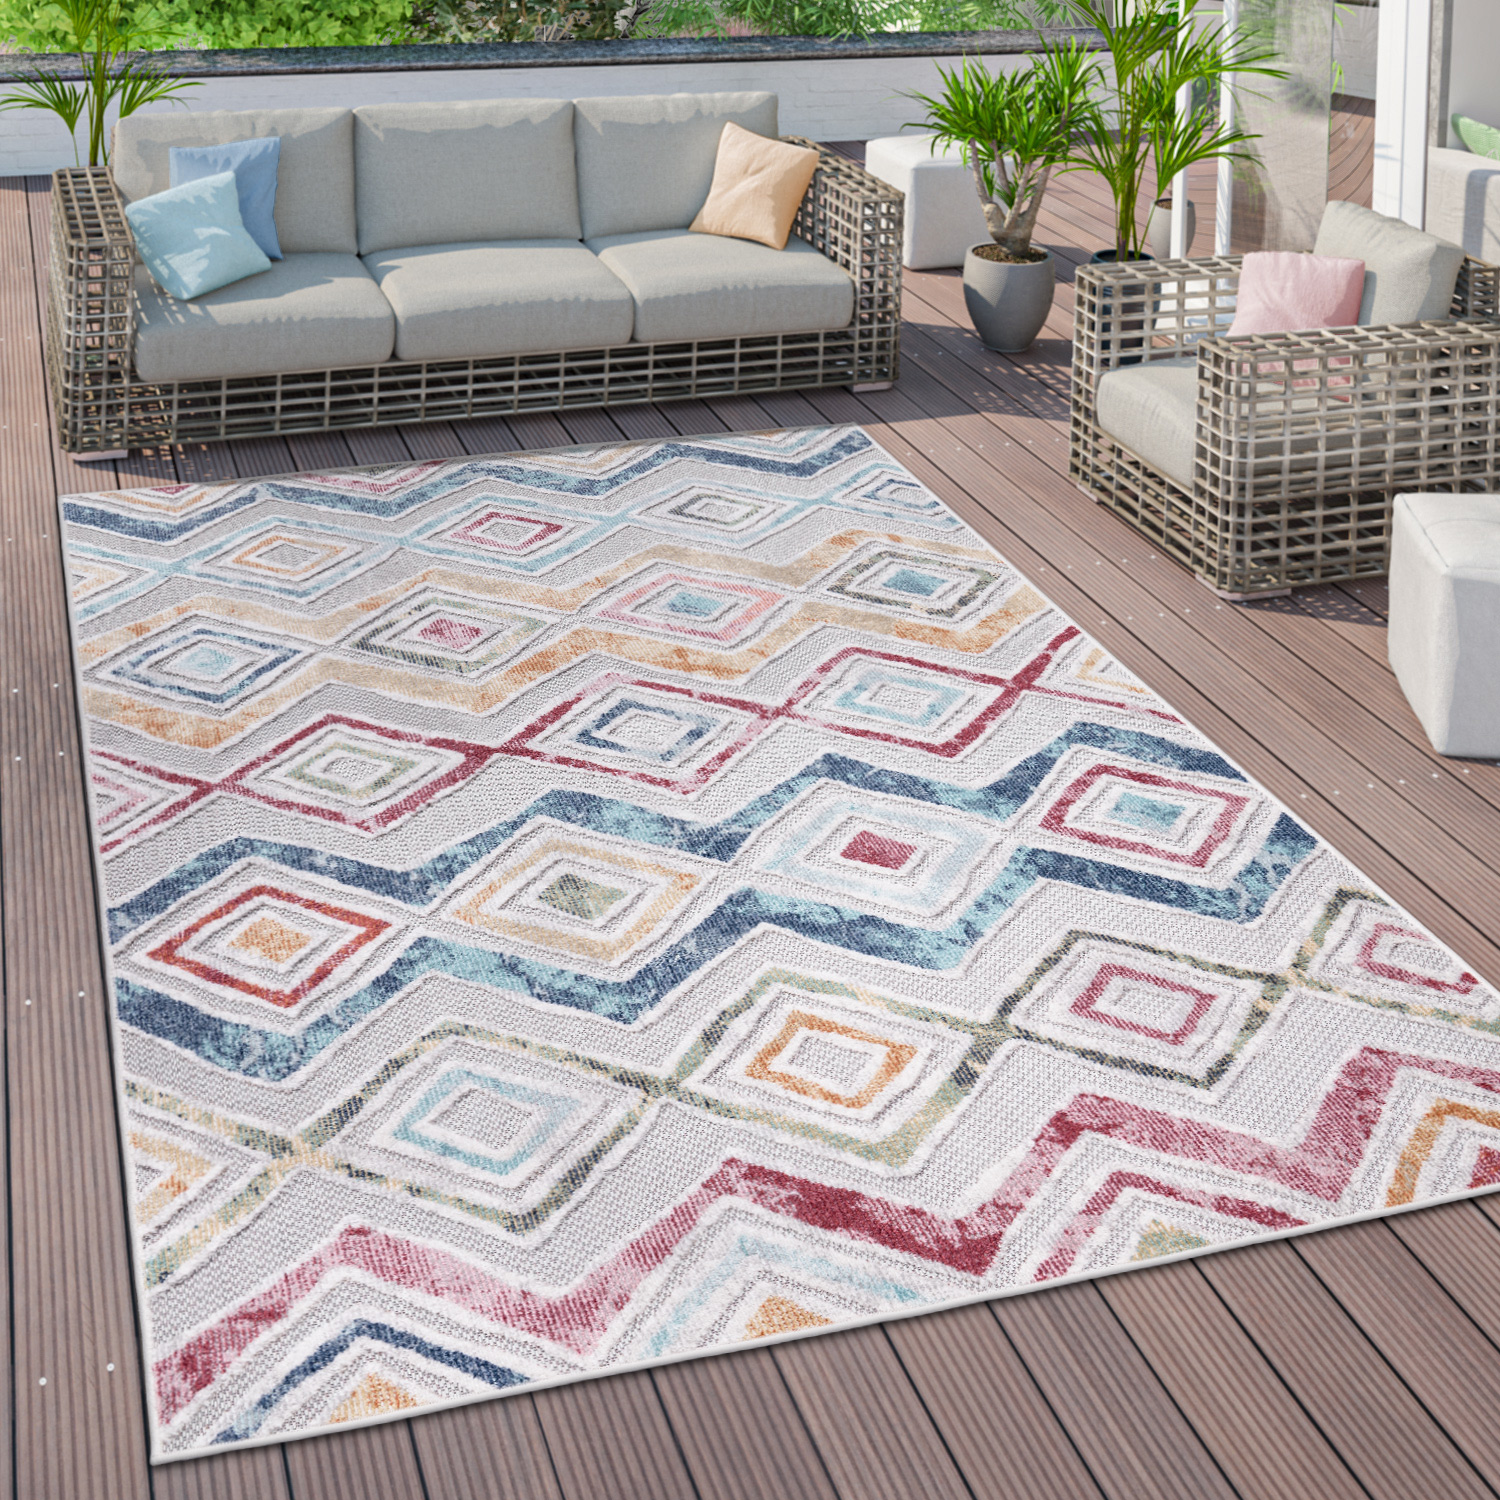 Outdoor Teppich Terrasse Ethno Motiv 3D Effekt Mehrfarbig Modern